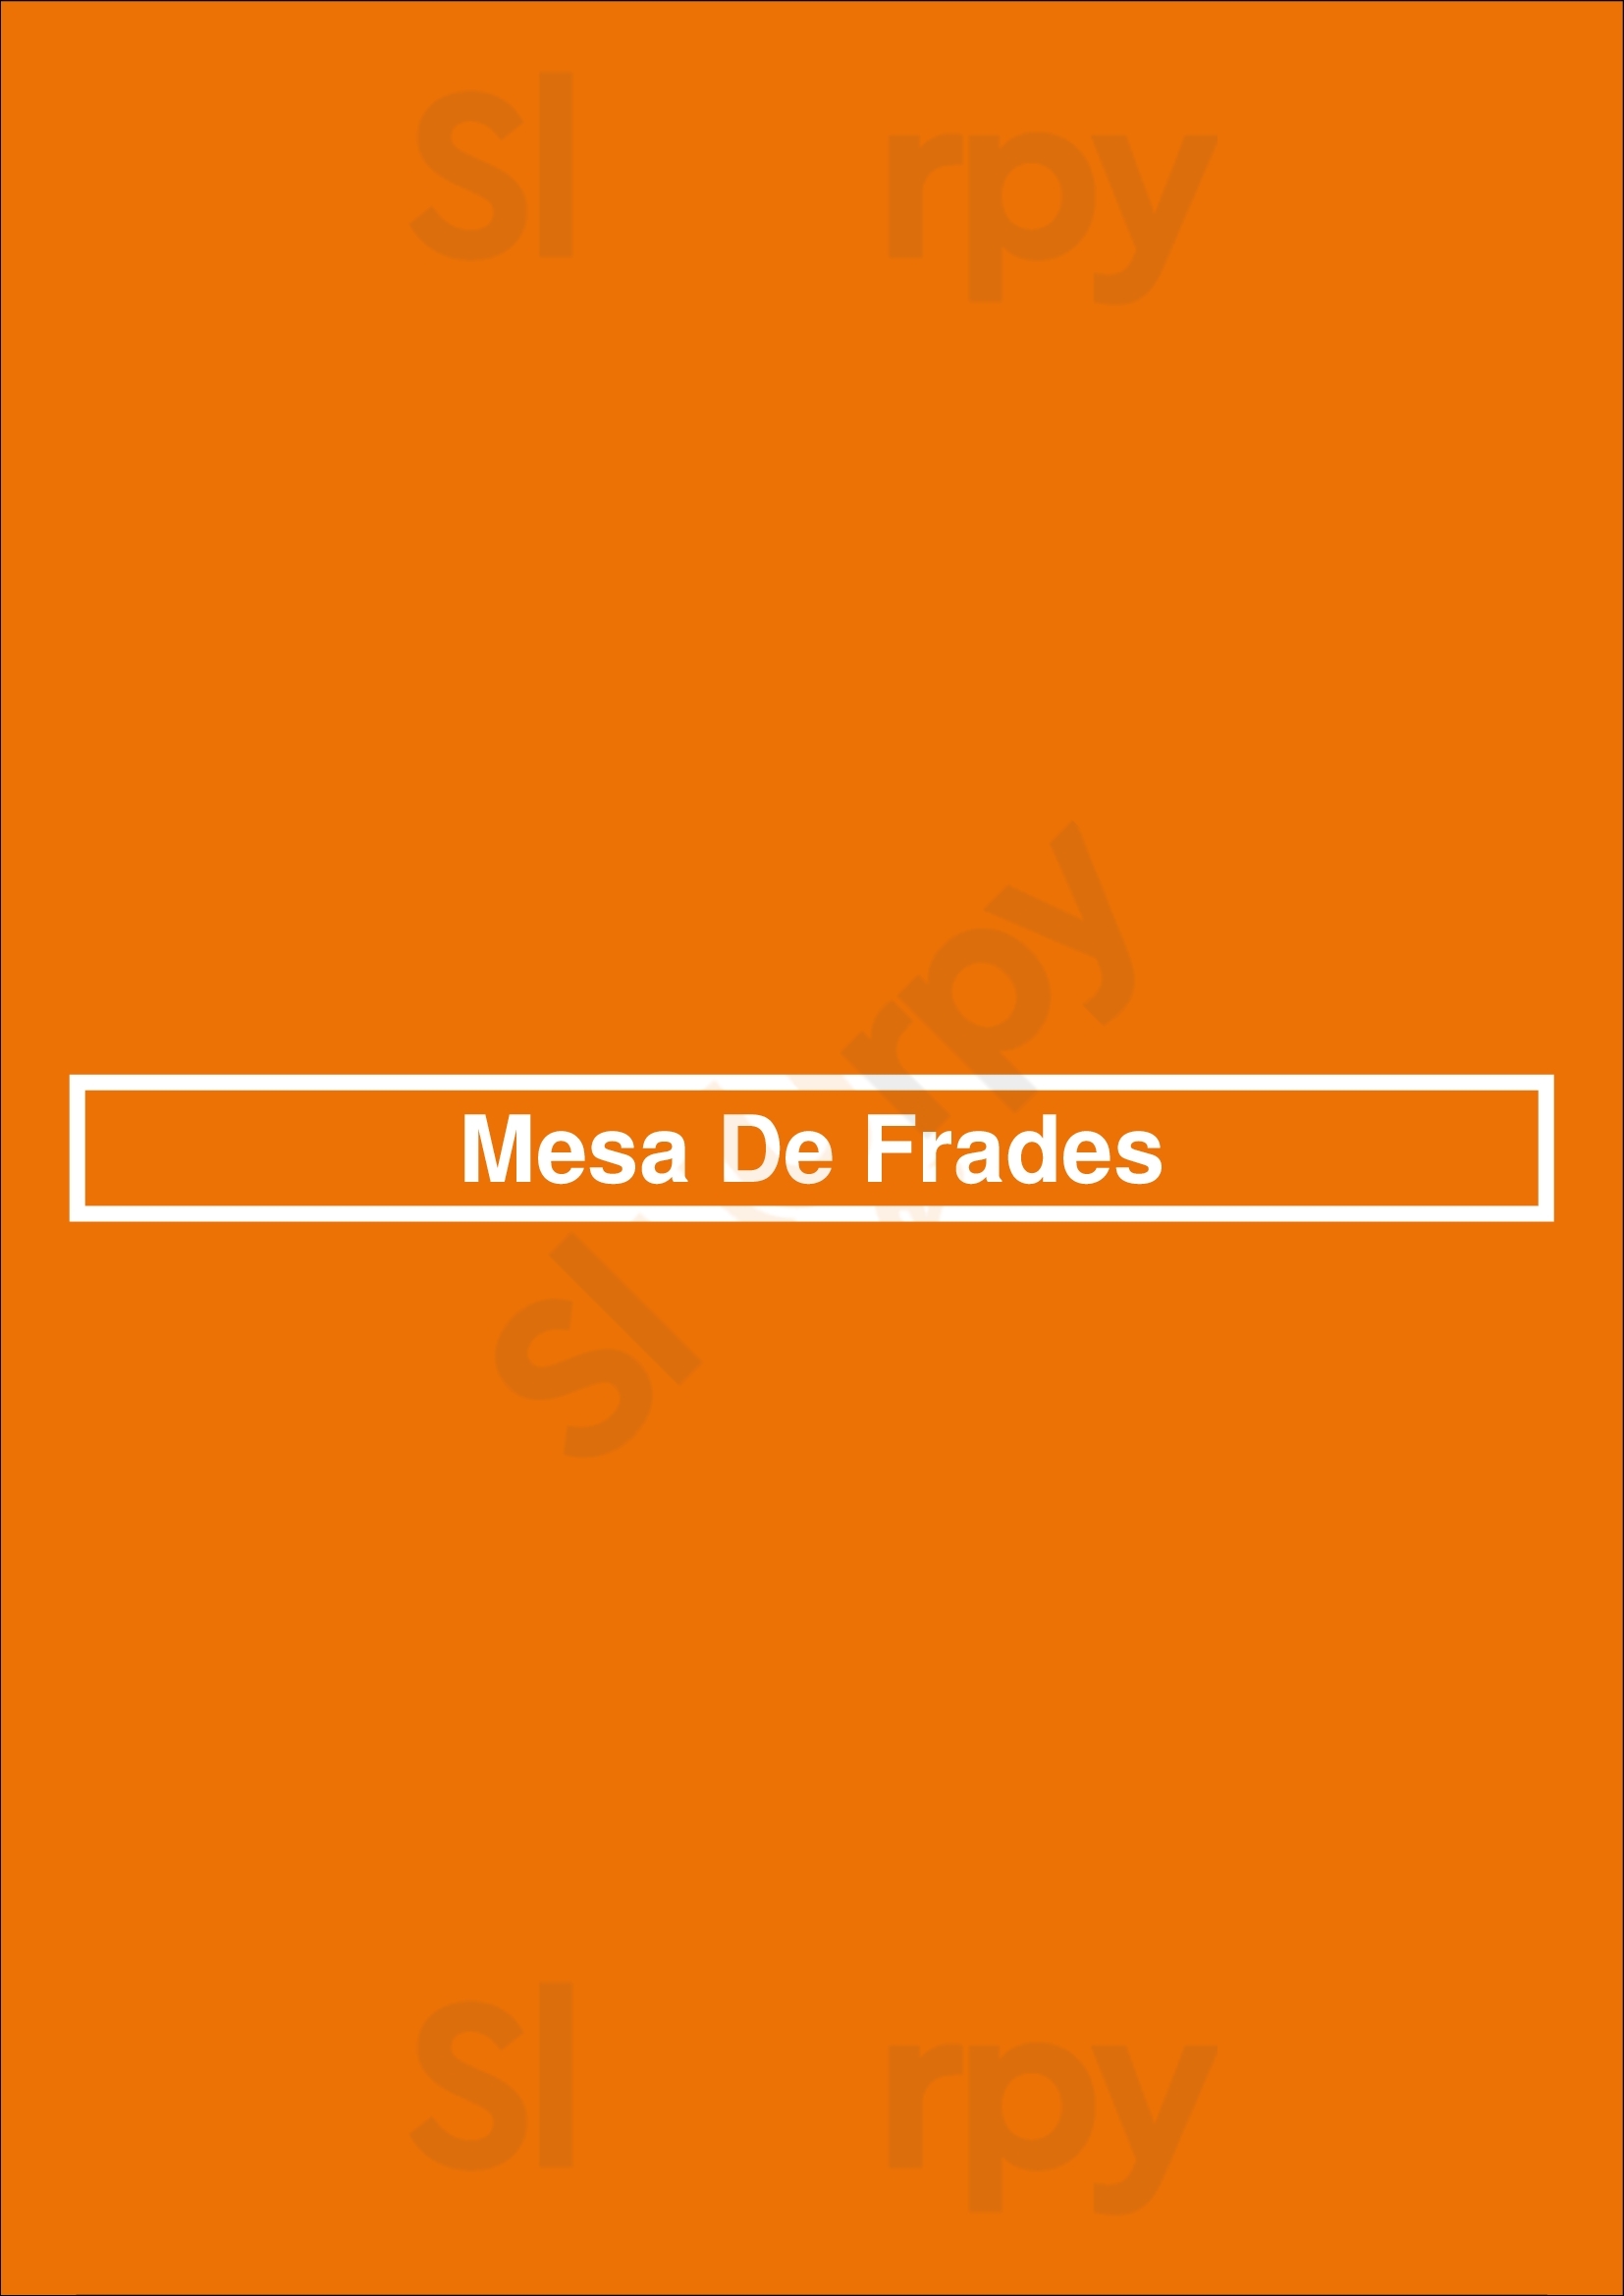 Mesa De Frades Lisboa Menu - 1